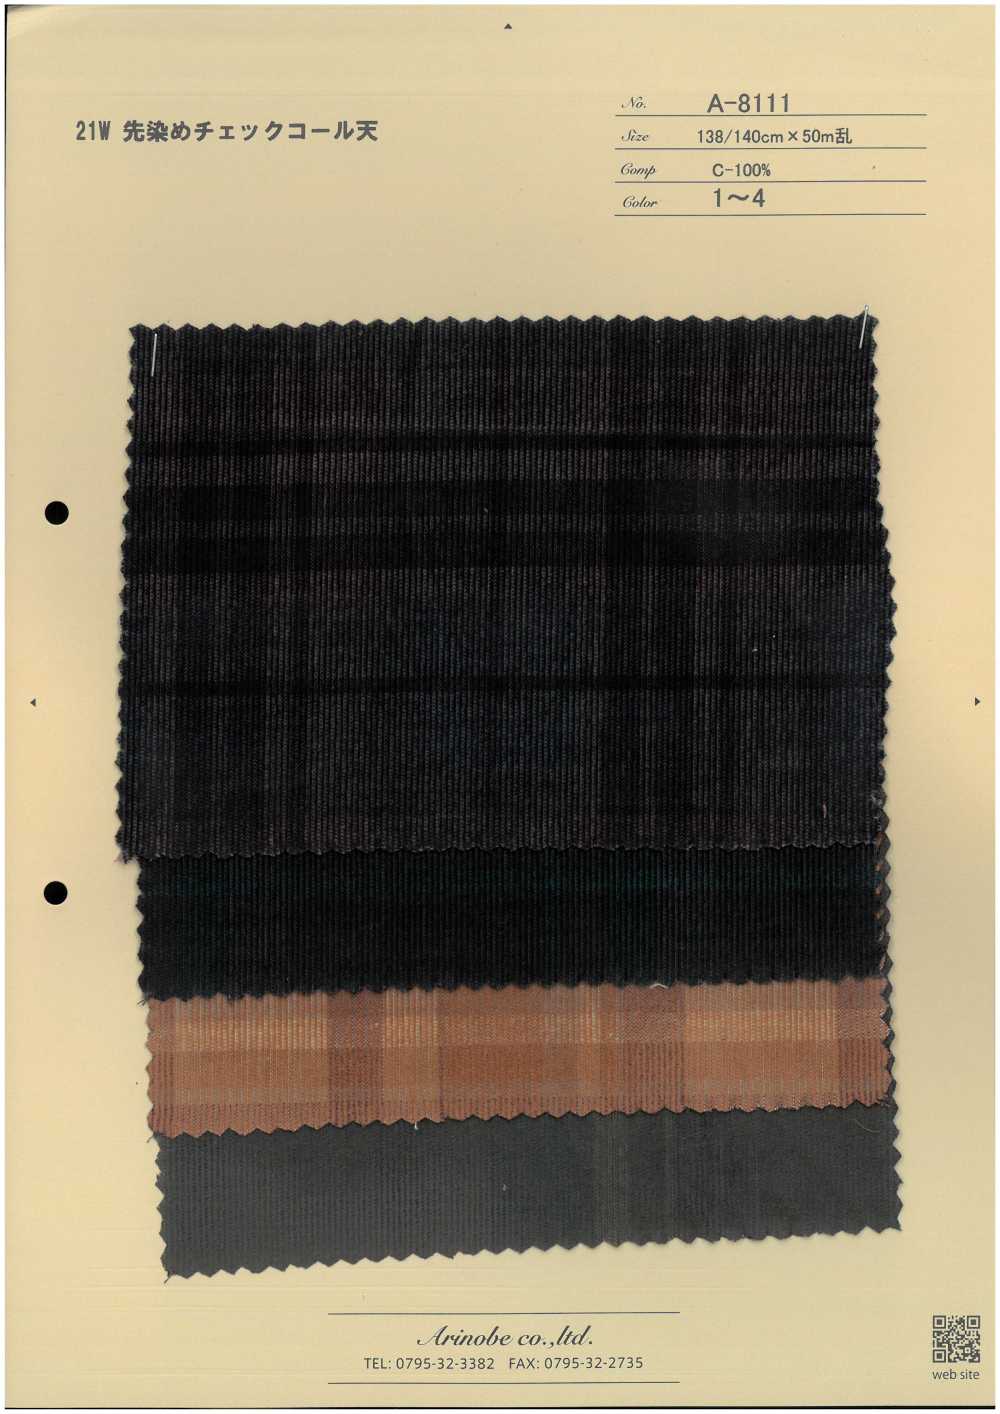 A-8111 21W Garngefärbter, Karierter Cord[Textilgewebe] ARINOBE CO., LTD.